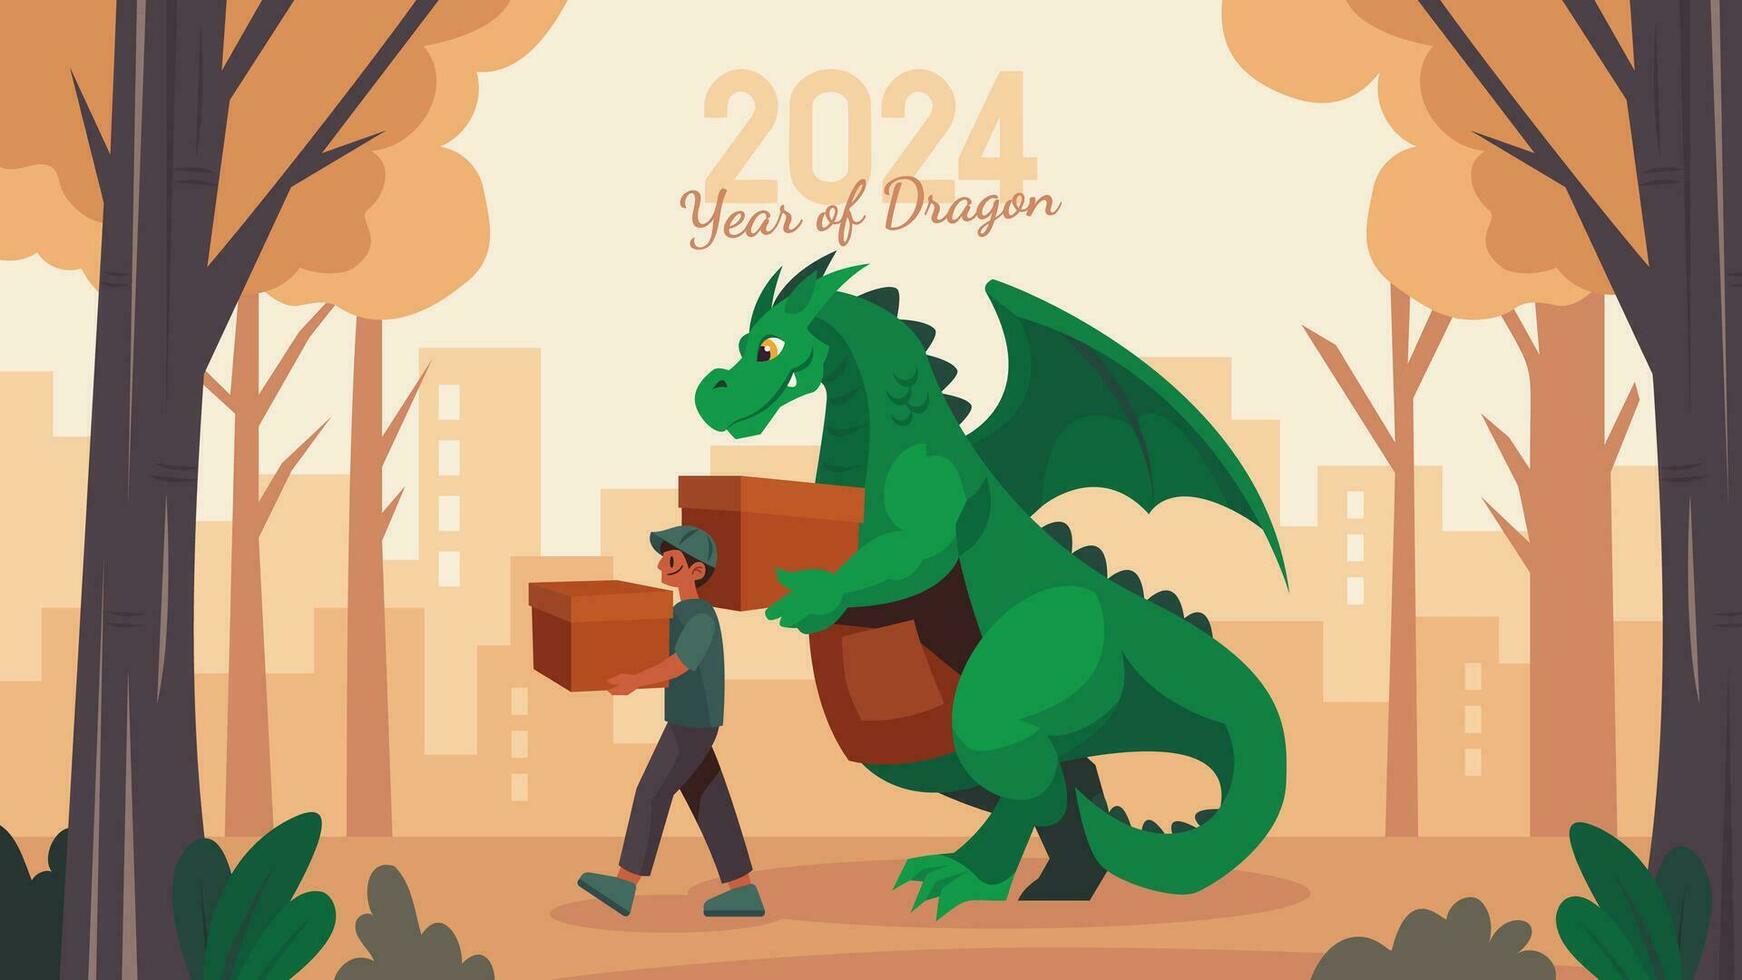 2024 Chinesisch Neu Jahr Grün Drachen Vektor Illustration mit ein Grün Drachen und Menschen beschäftigt, verlobt im verschiedene Aktivitäten perfekt zum Gruß Karten, Poster, Banner und mehr.